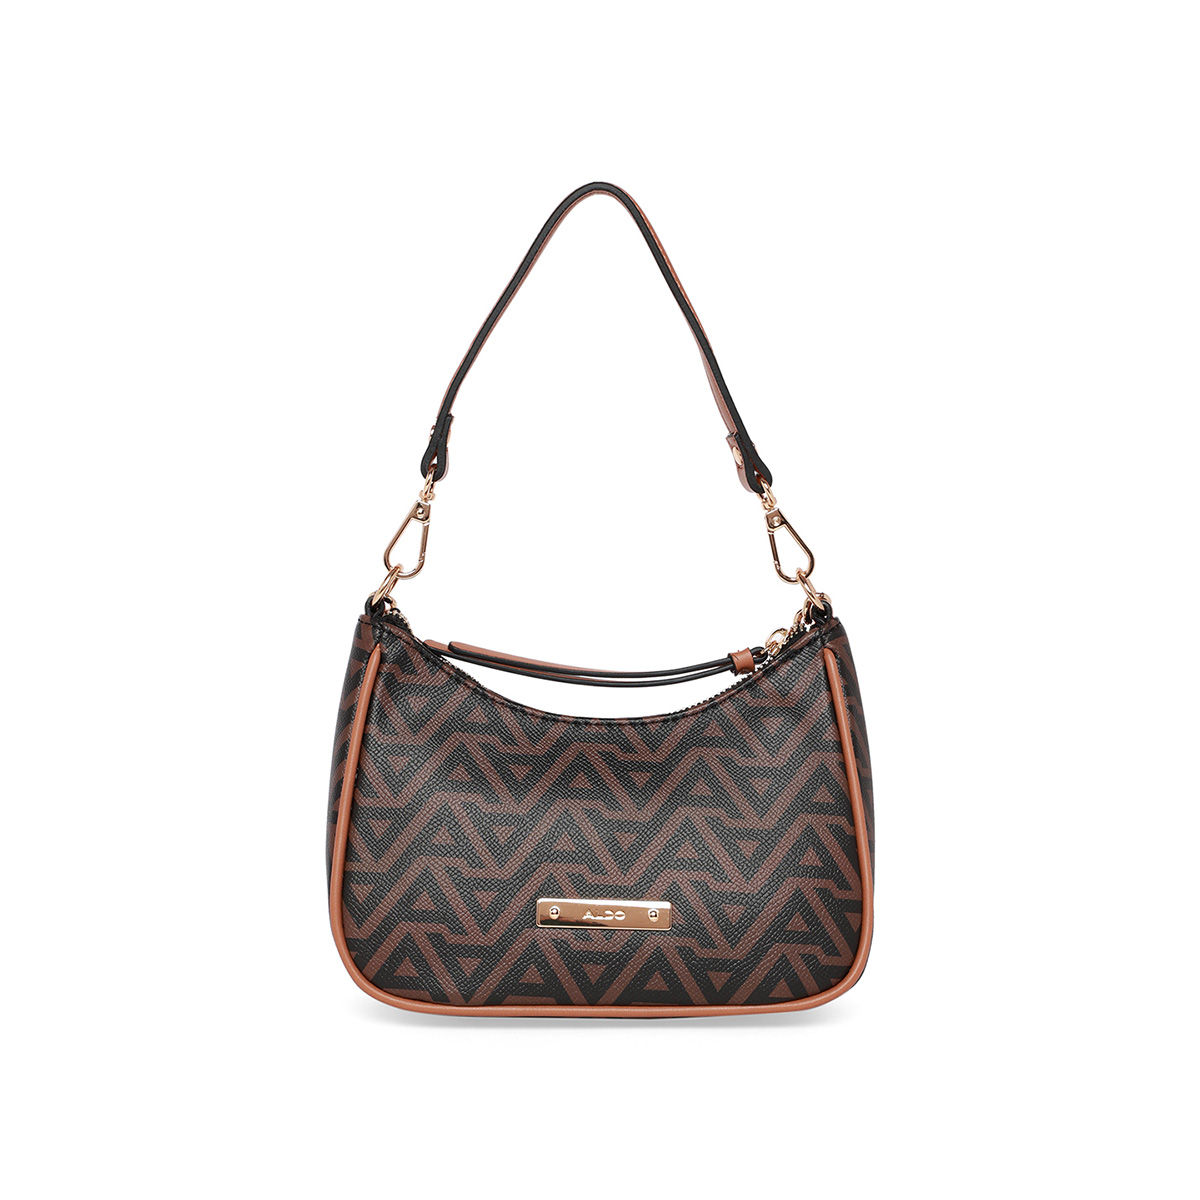 Buy Aldo Ocilall Black Solid Medium Handbag Online At Best Price @ Tata CLiQ